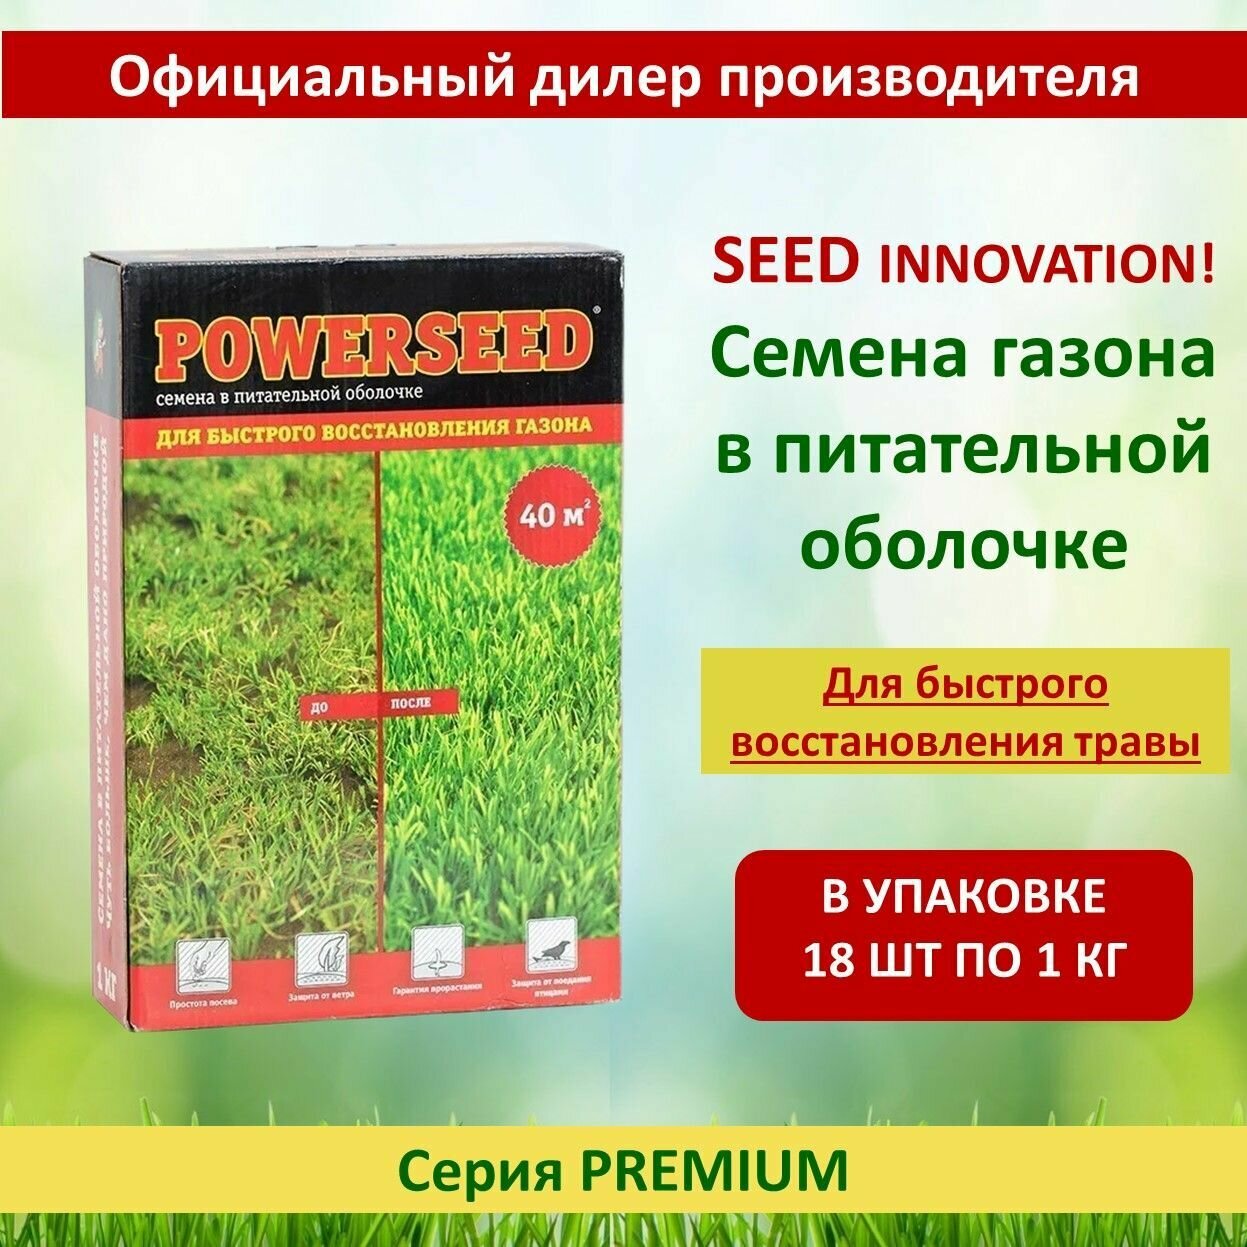 Семена газона в питательной оболочке Powerseed для быстрого восстановления газона 1 кг х 18 шт (18 кг)